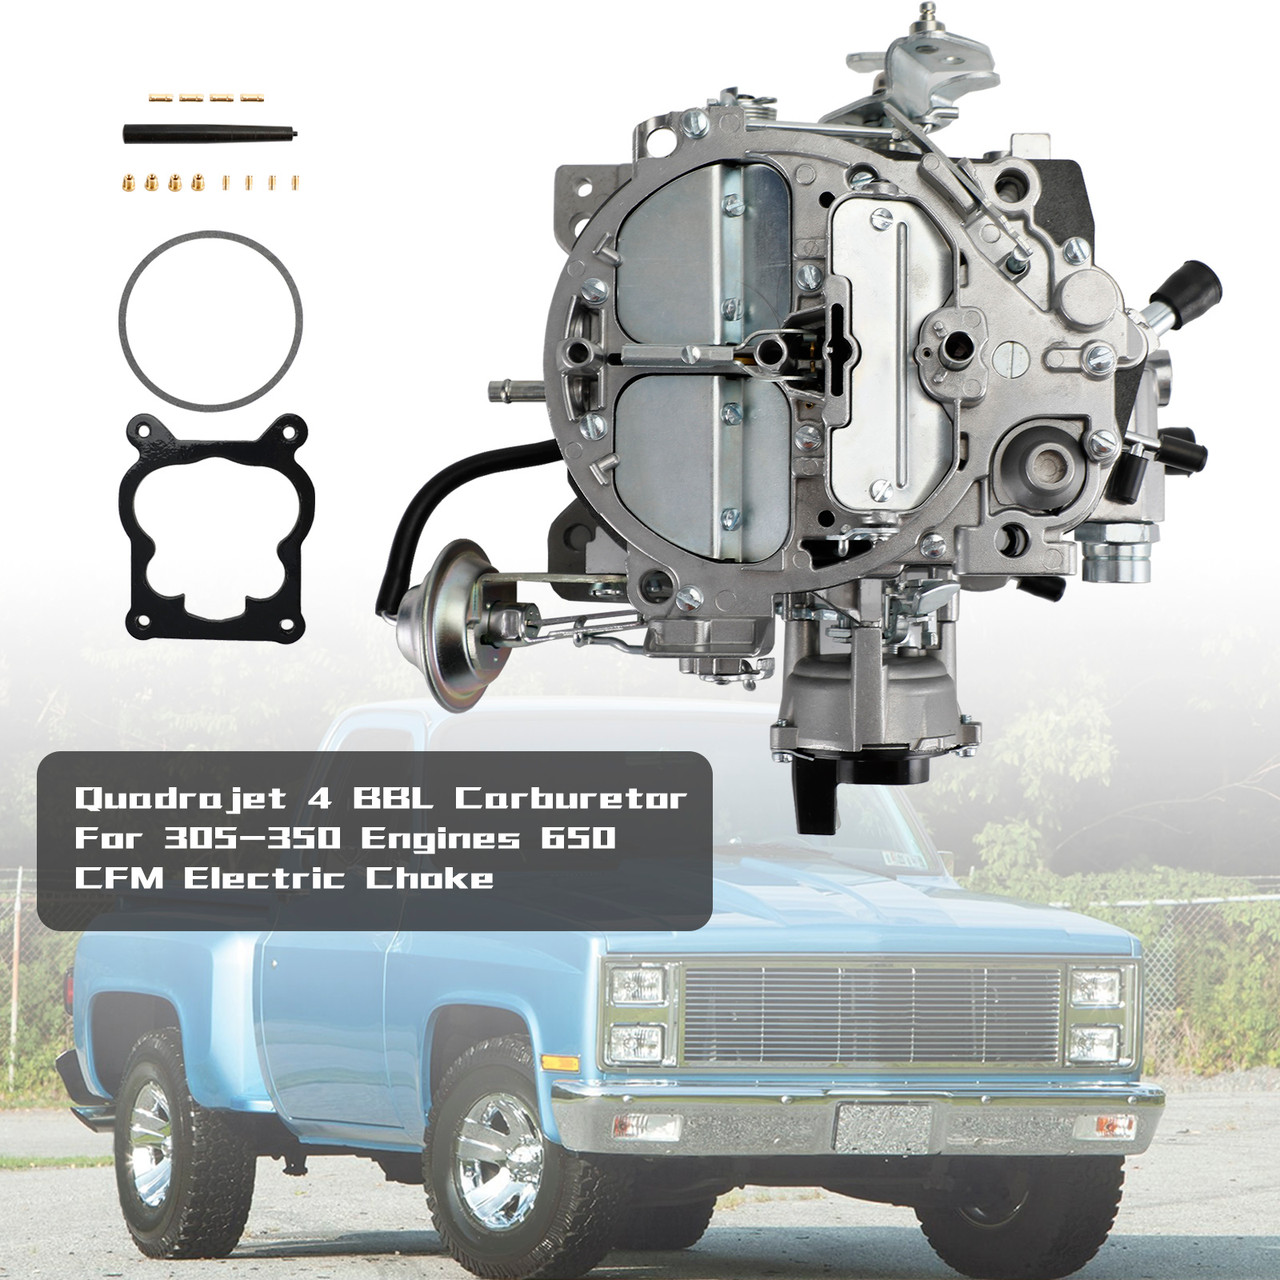 82-85 CHEVY Cars & Truck Quadrajet 4 BBL Carburetor 1904R 17066422